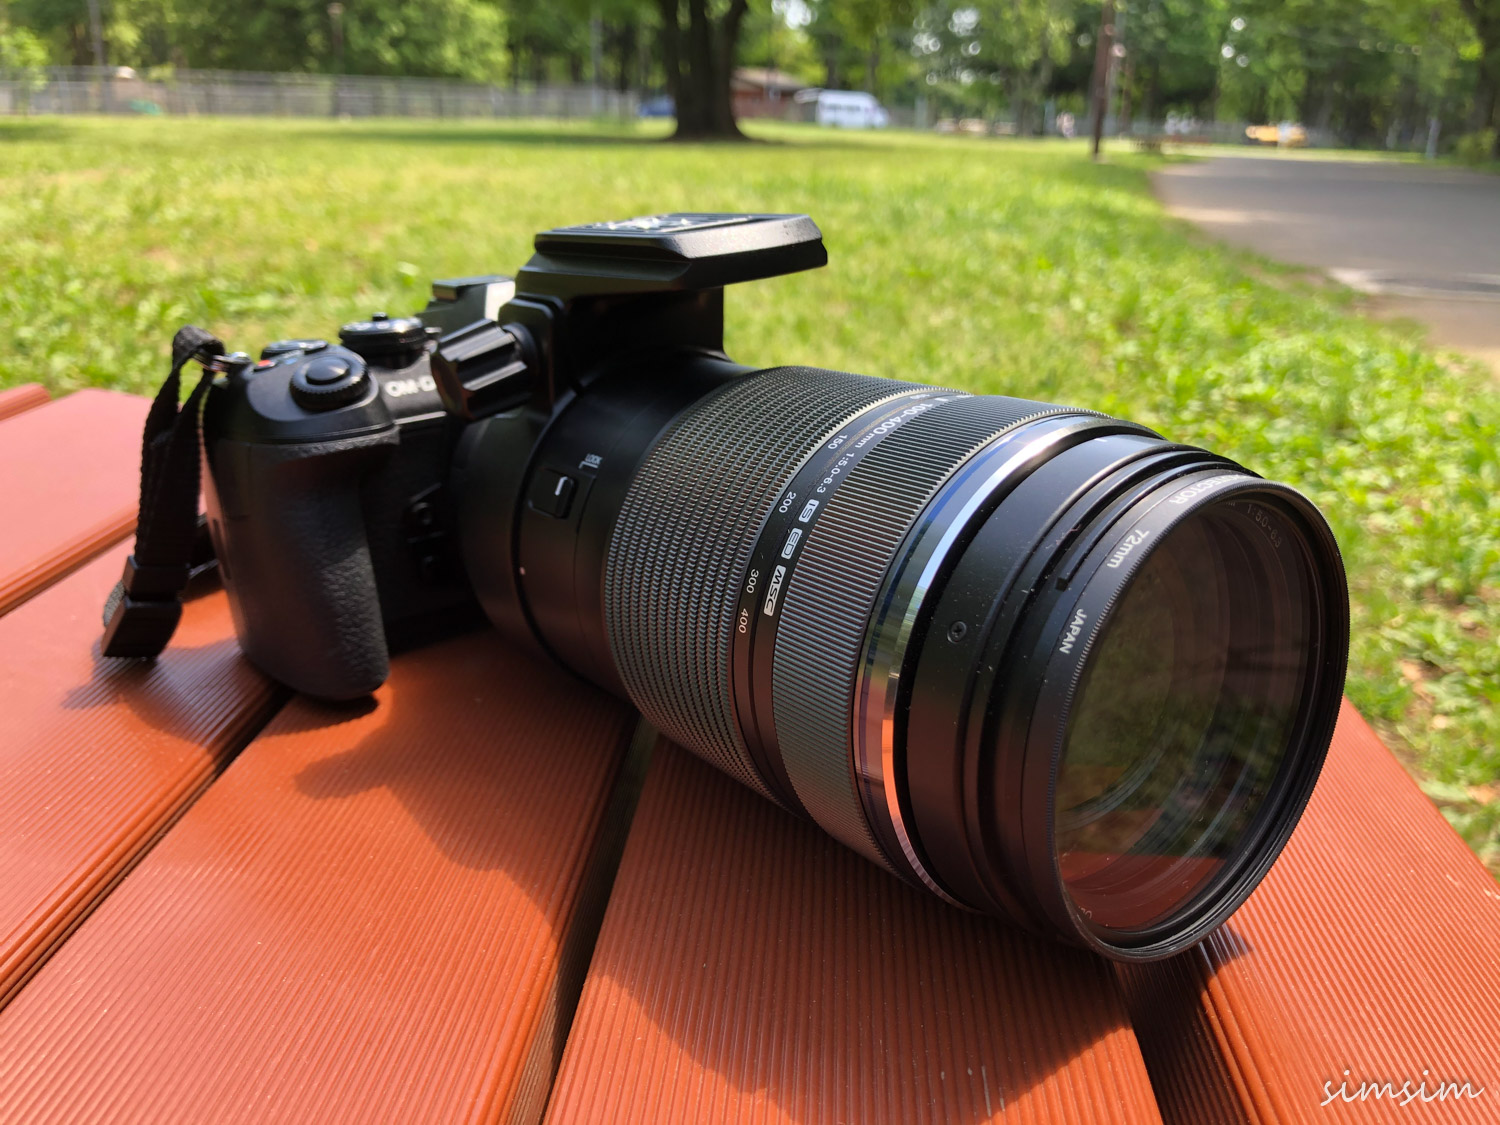 カメラ レンズ(ズーム) オリンパス超望遠レンズ100-400mmで野鳥撮影。使った感想や撮った写真 